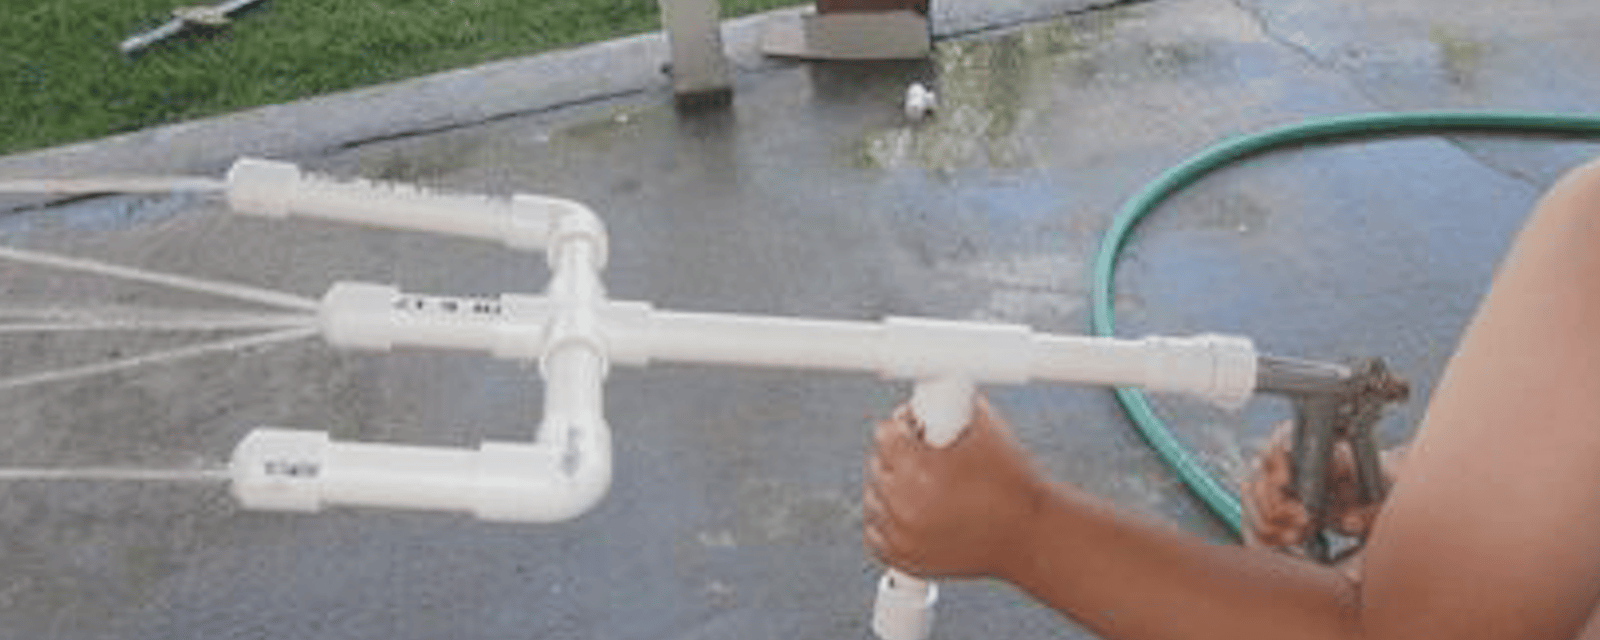 Comment faire un super pistolet à eau avec des tuyaux